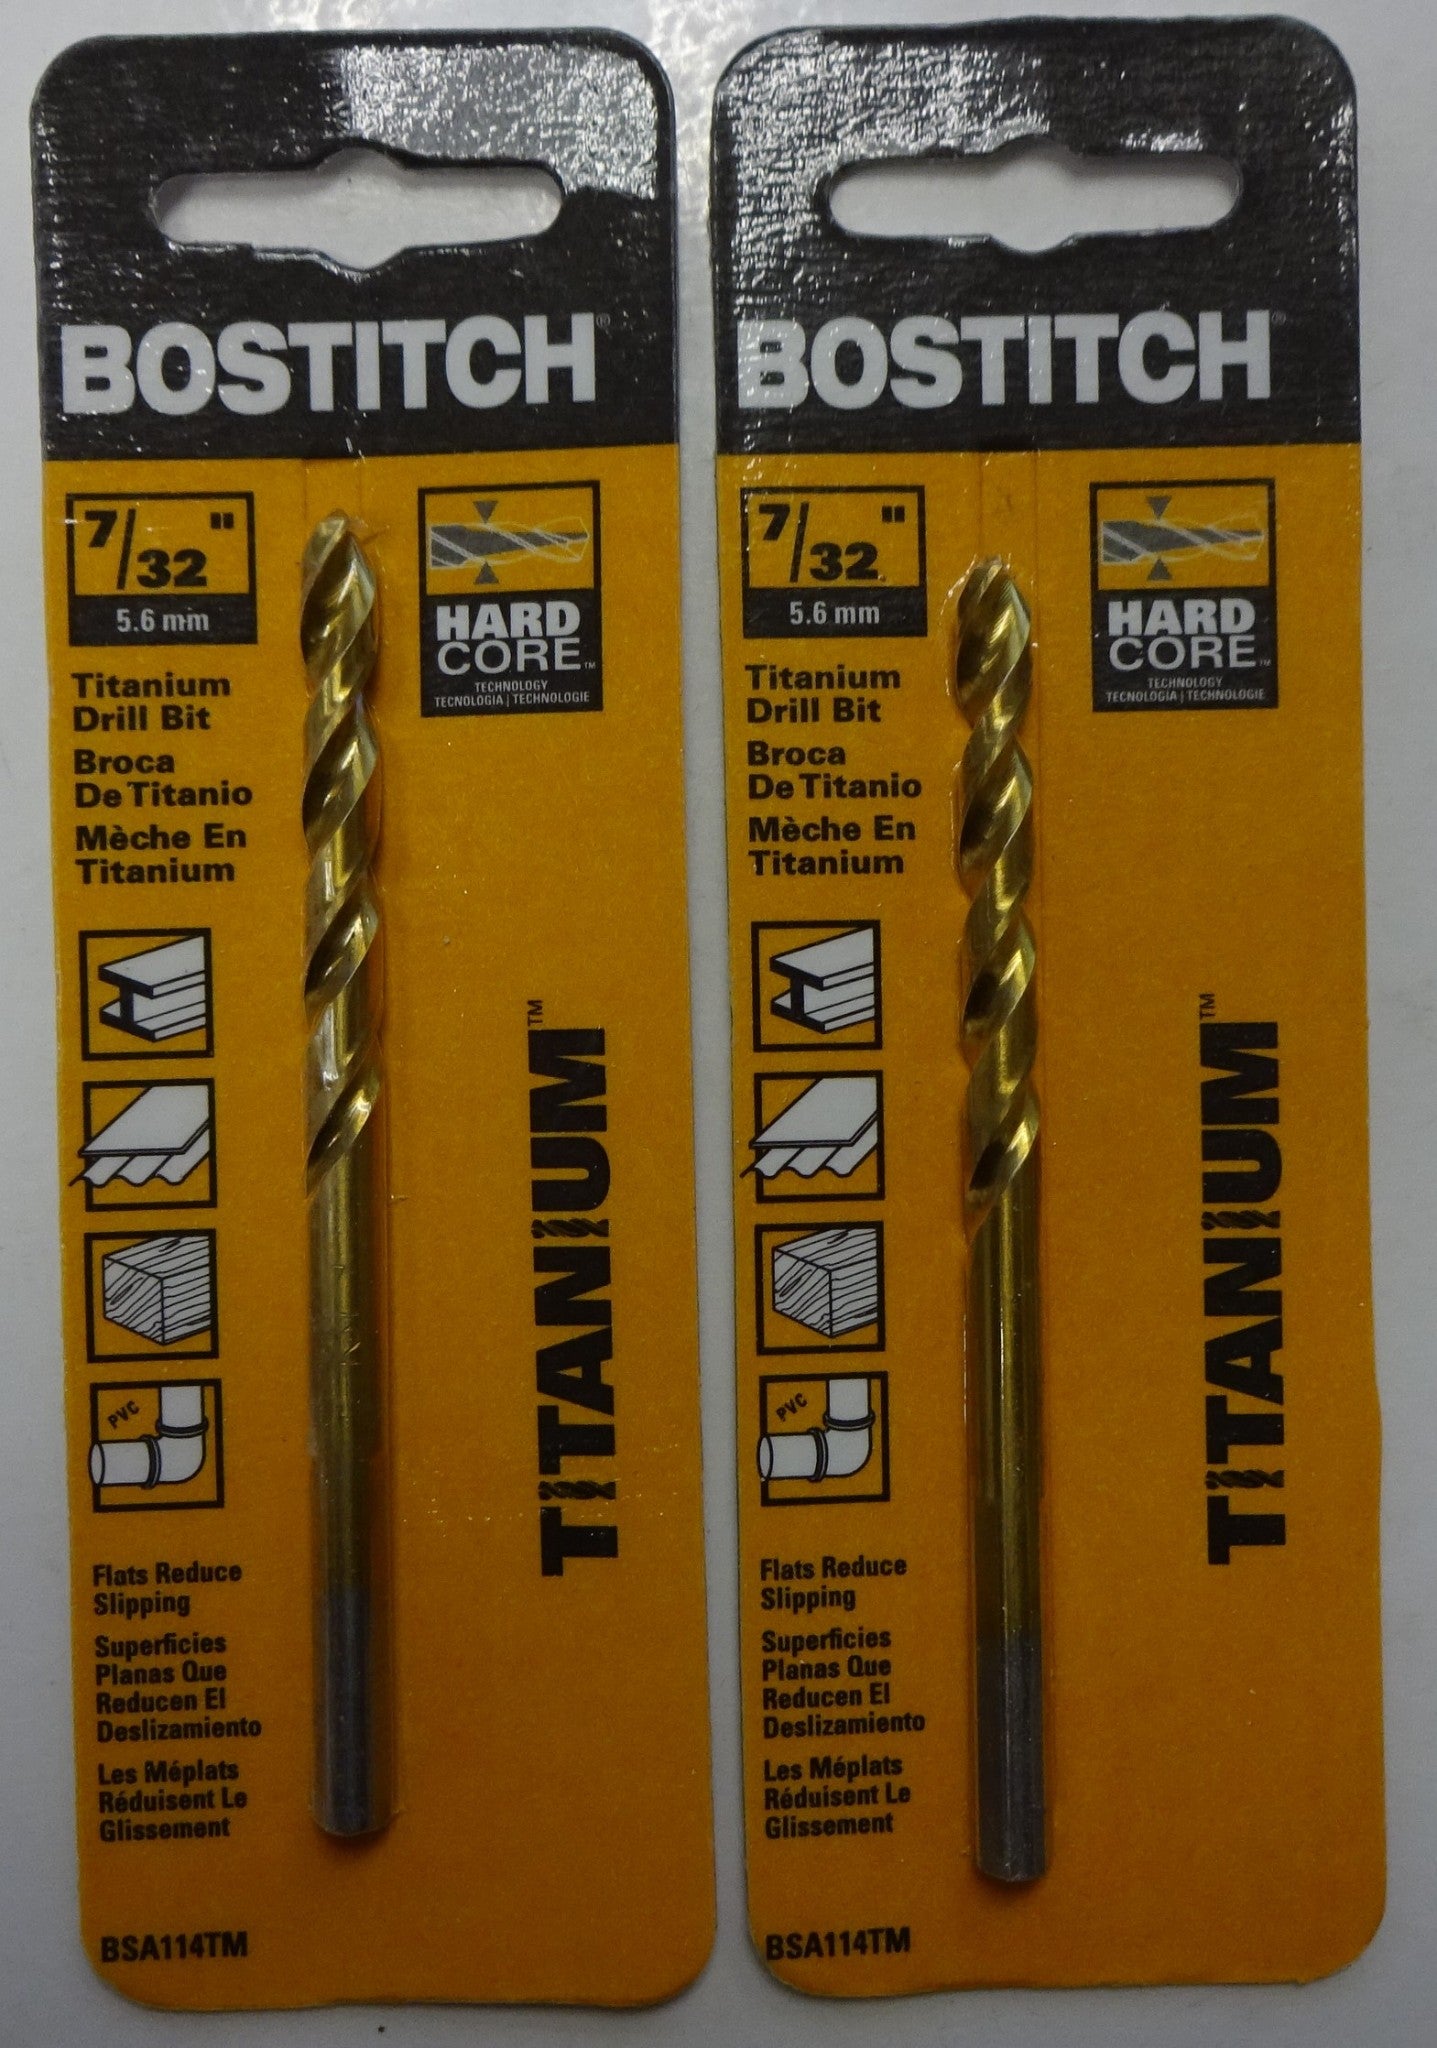 Bostitch BSA114TM 7/32" Titanium Drill Bit 2pcs.